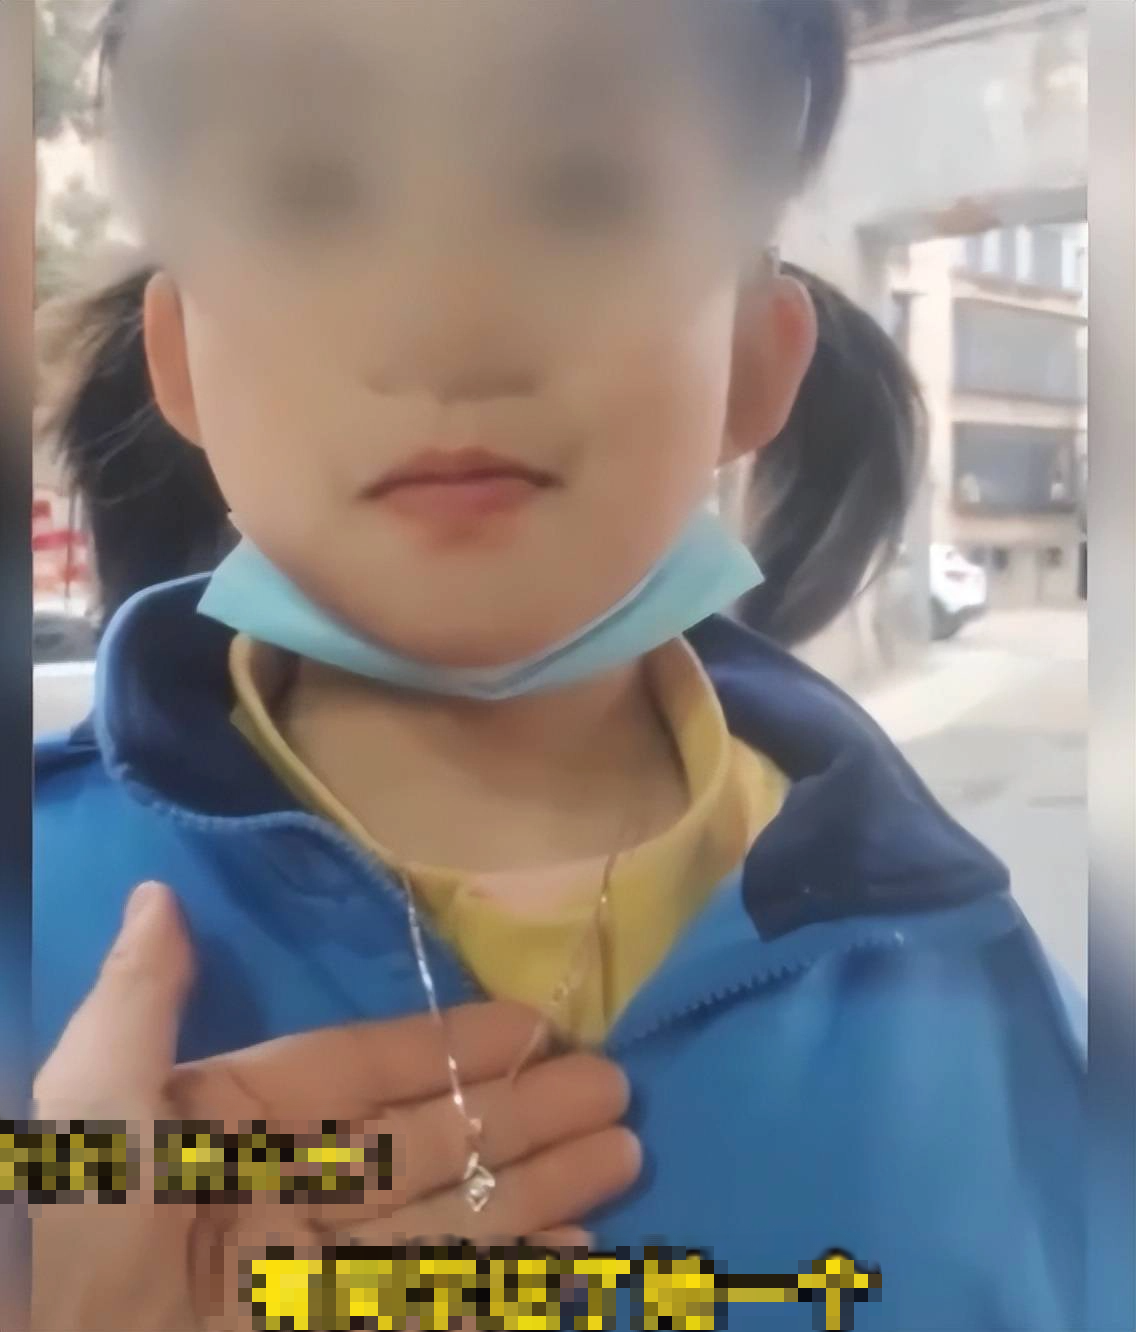 "Báo con" 8 tuổi lấy trộm sợi dây chuyền của bố mẹ giá 70 triệu đi tặng bạn gái ngày Valentine, phụ huynh ứng xử cao tay khiến netizen thán phục - Ảnh 1.